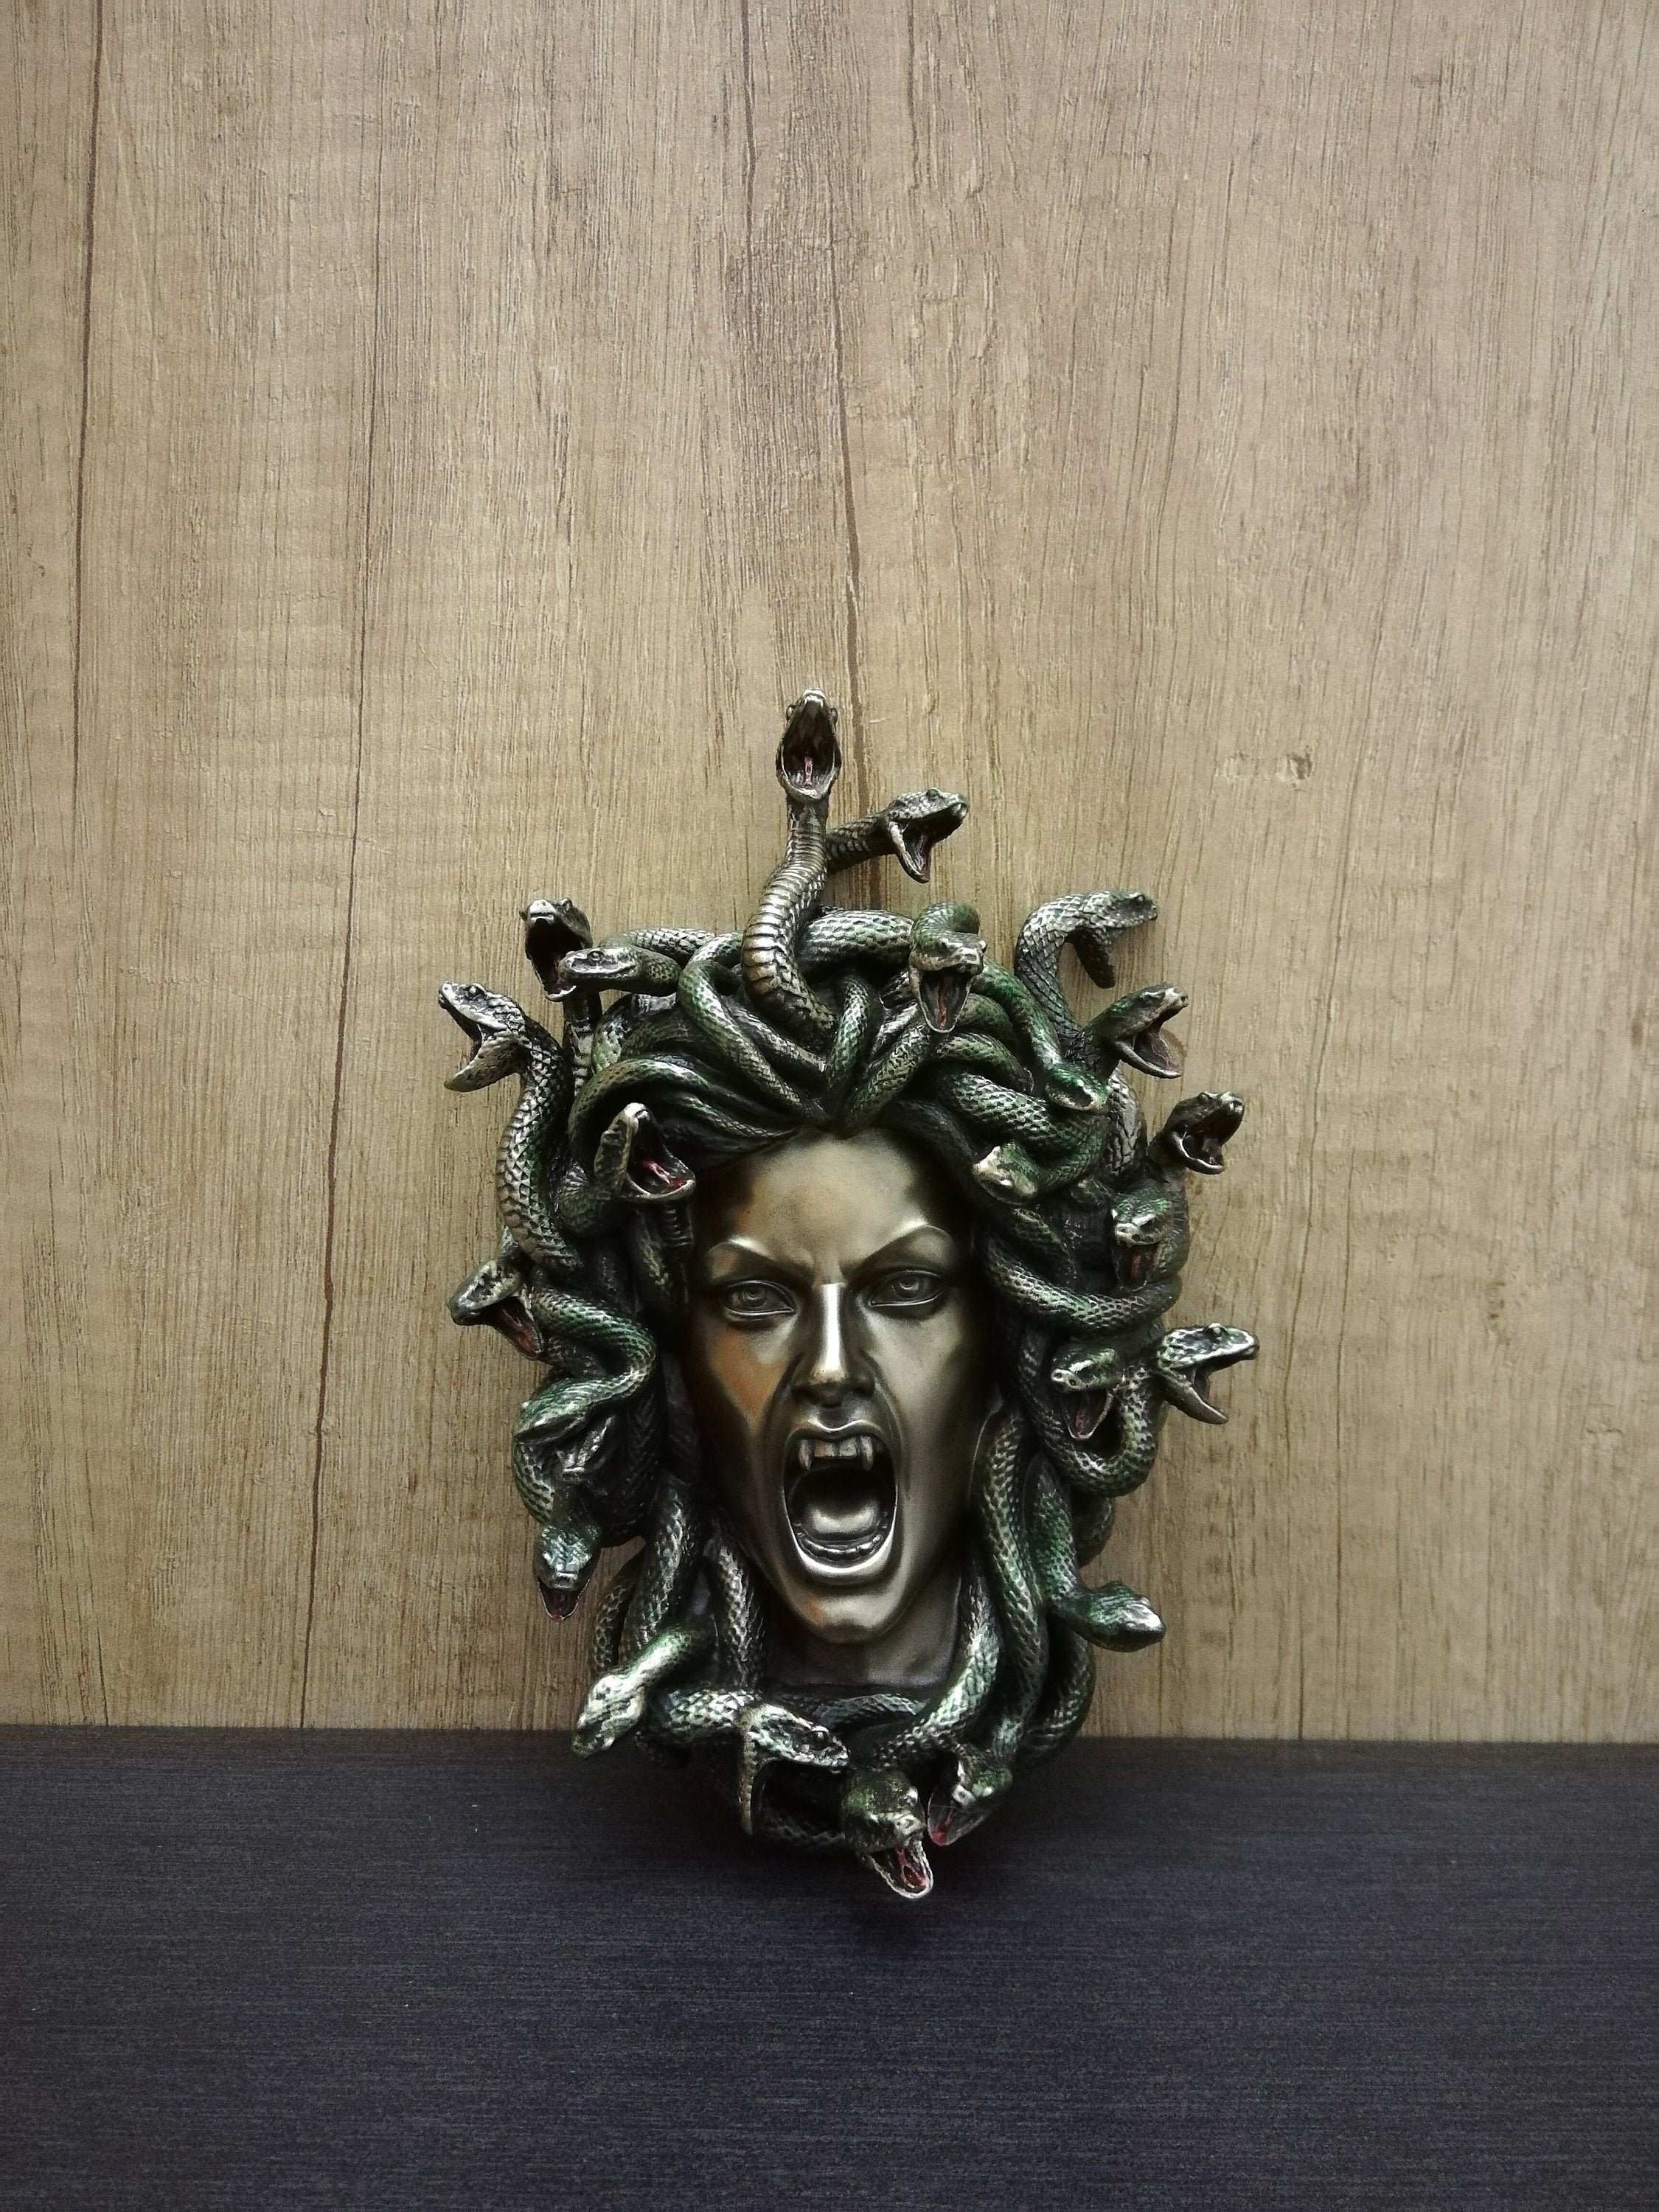 Medusa Greek Mythology Gorgon (Decorative Sculpture / 21 cm /8.66 inches)